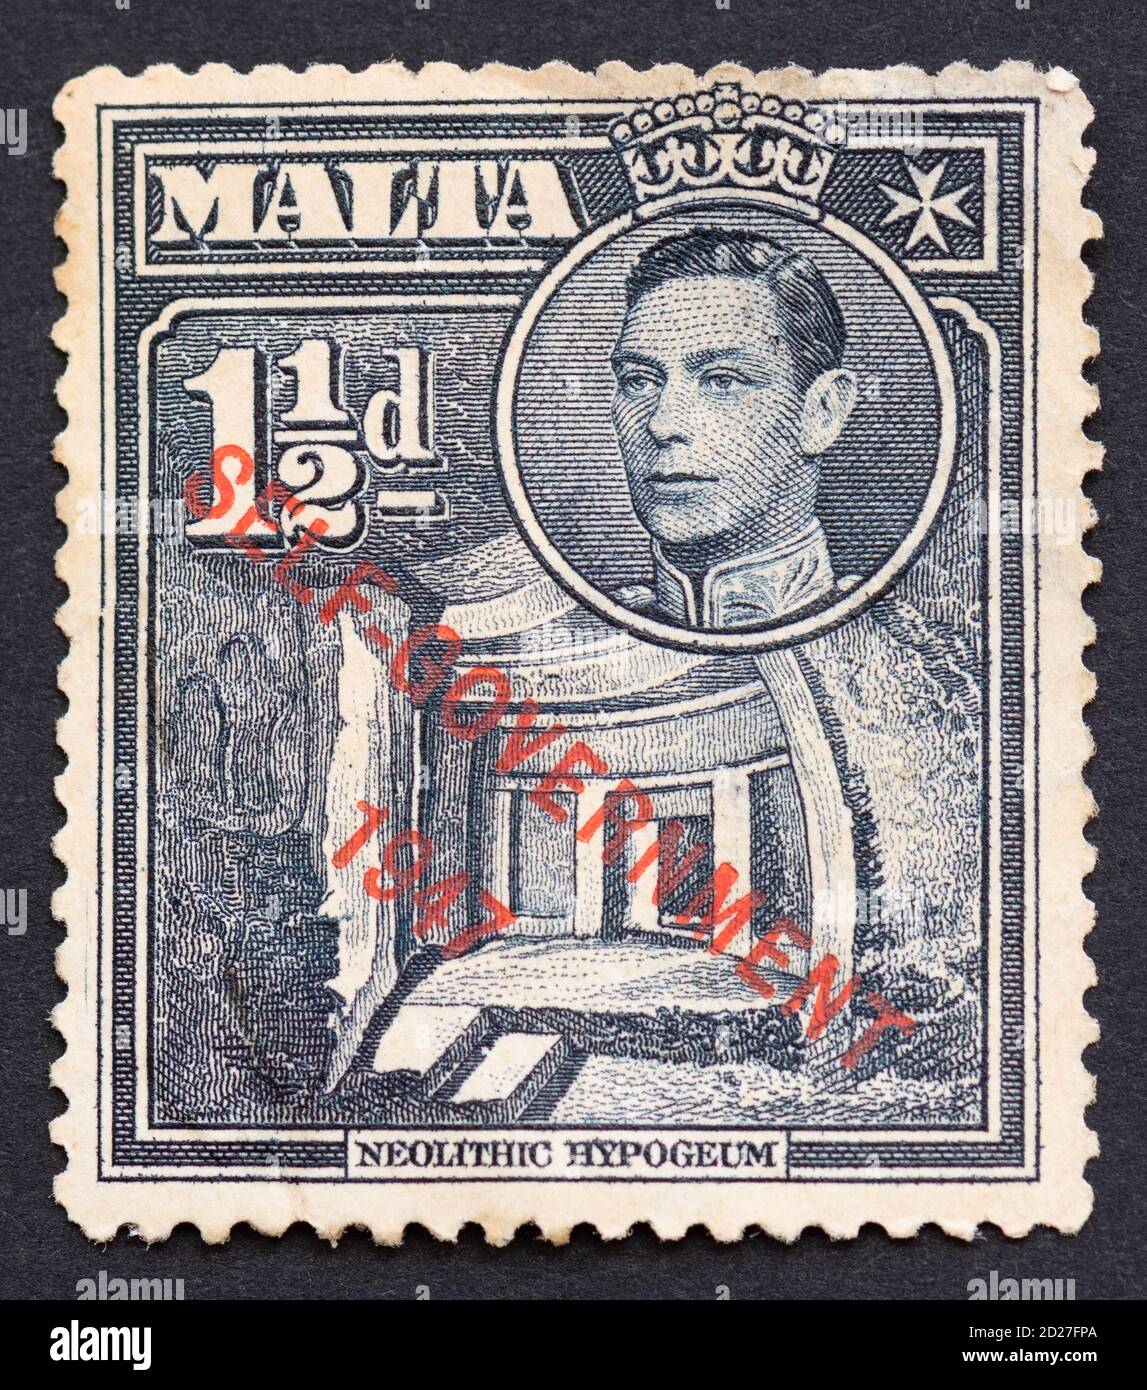 Maltesische Briefmarke mit König Georg VI. Und Hal Saflieni Hypogeium Überdruckte Selbstverwaltung 1947 Stockfoto